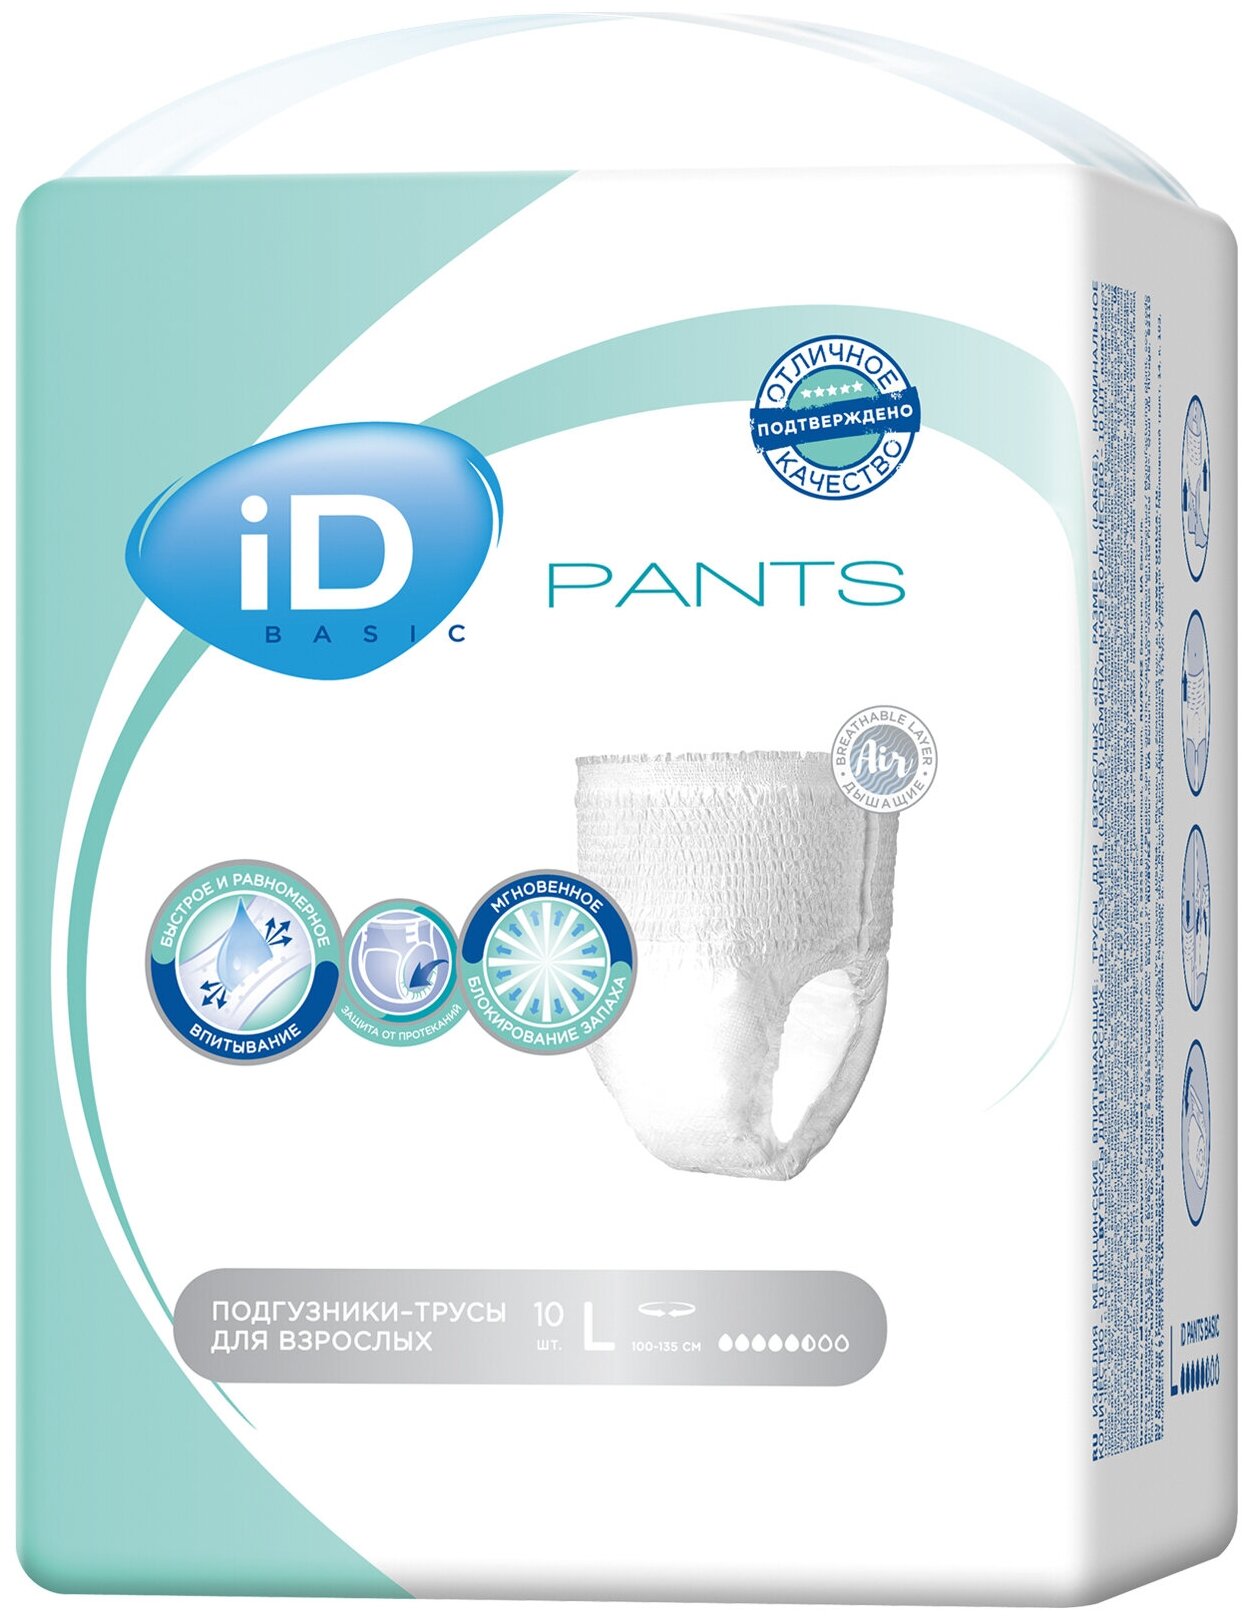 Подгузники-трусы iD Pants Basic Large, объем талии 100-135 см, 10 шт.